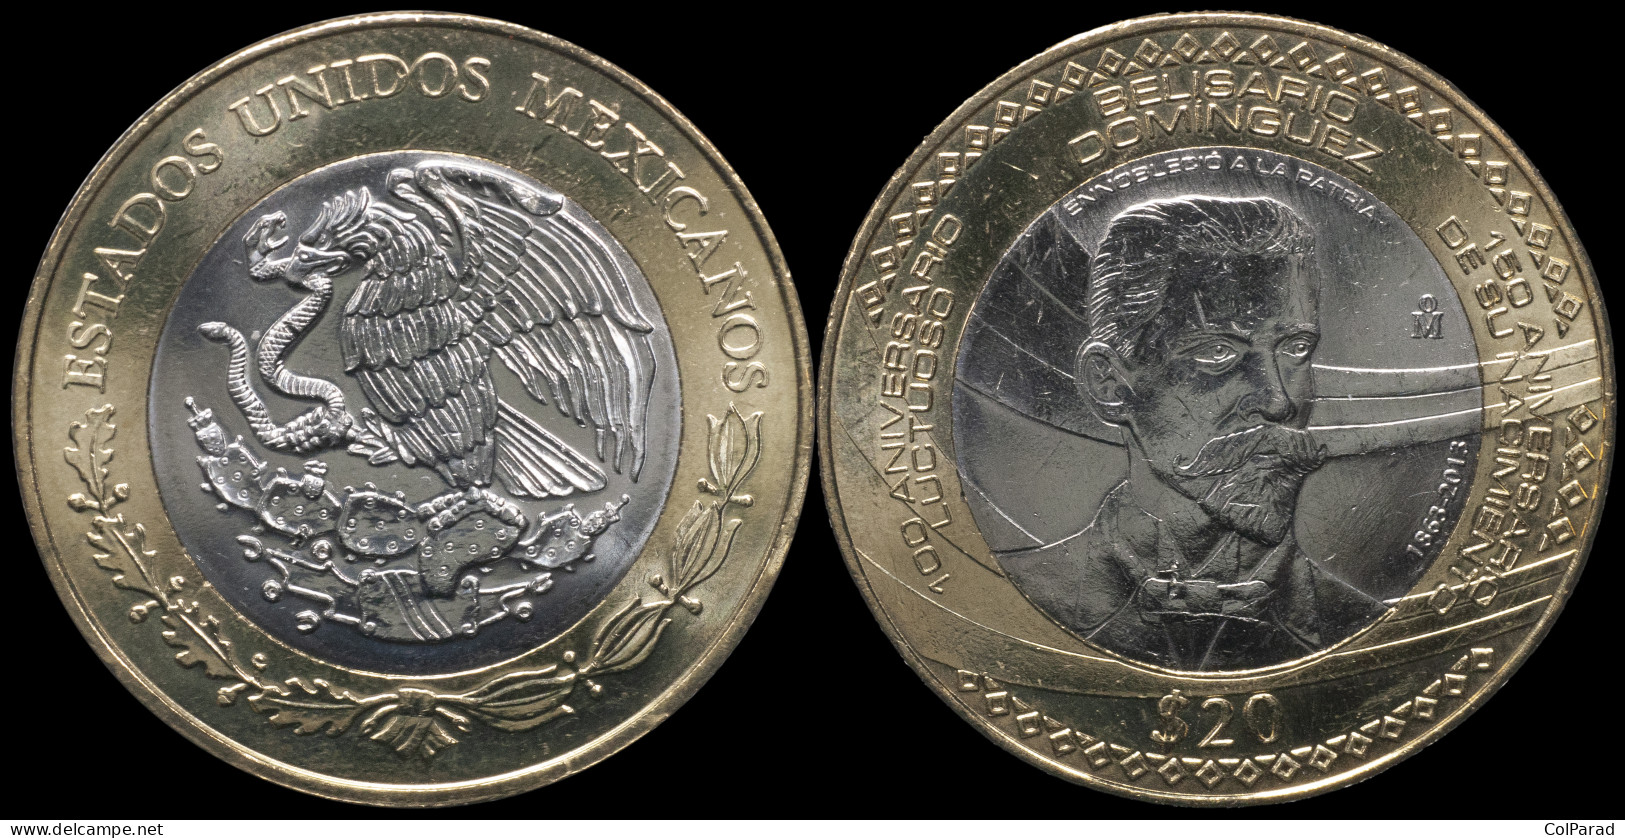 MEXICO COIN 20 PESOS - KM#970 Bi-Metallic Unc - 2013 - Belisario Domínguez - Mexico